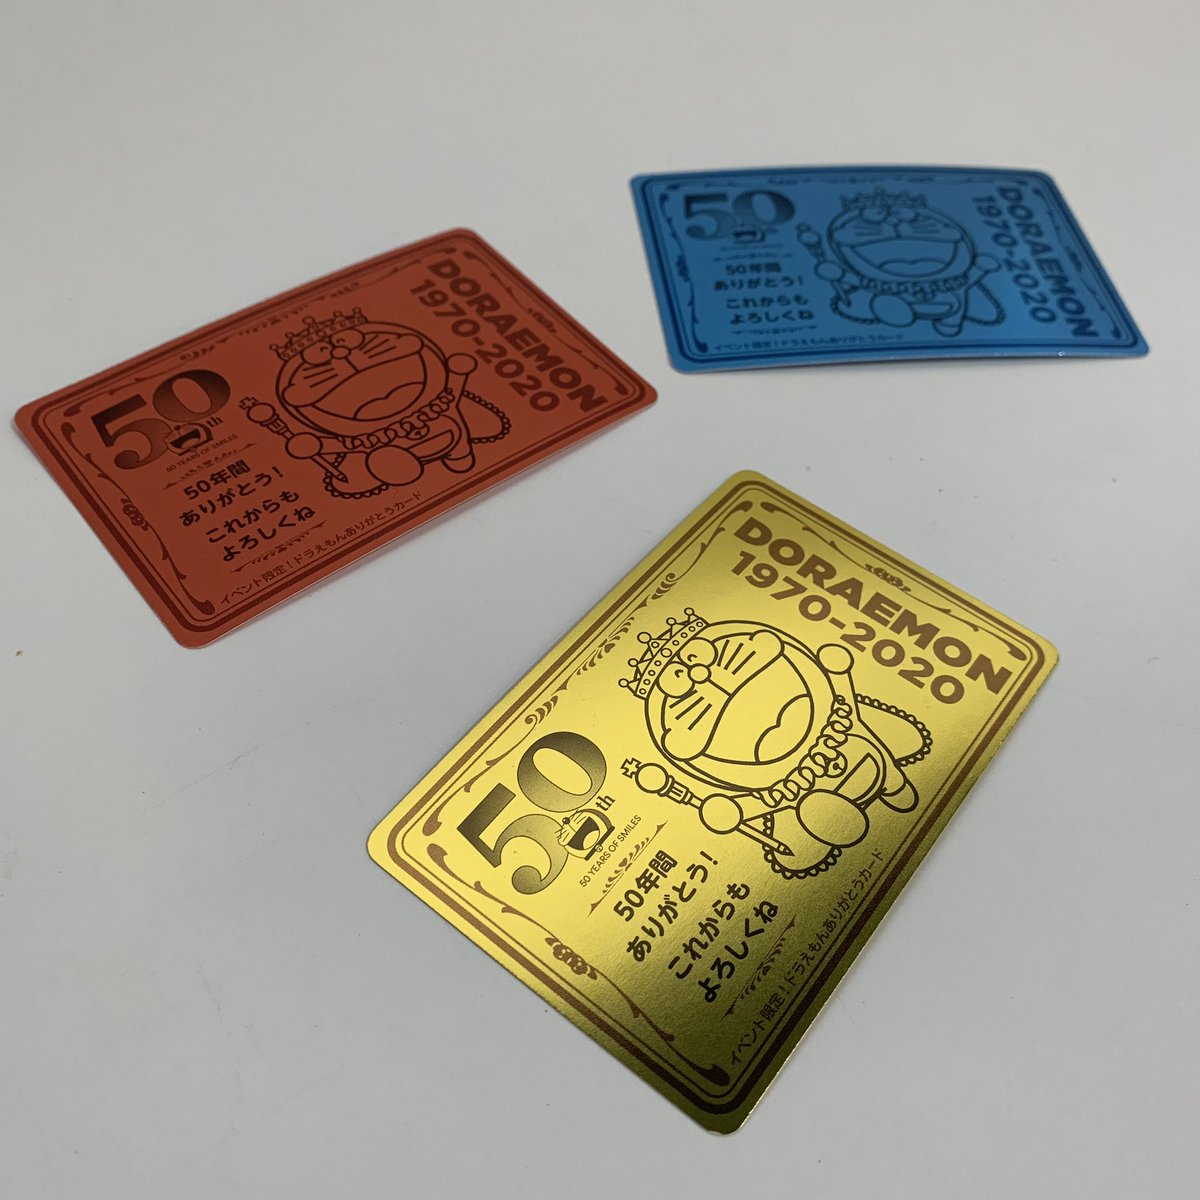 ドラえもんのポケットに手を入れて、出たボールの色に応じてもらえるメッセージカード(全3種)は、ホロ仕様の豪華なものです!(写真は表裏) 